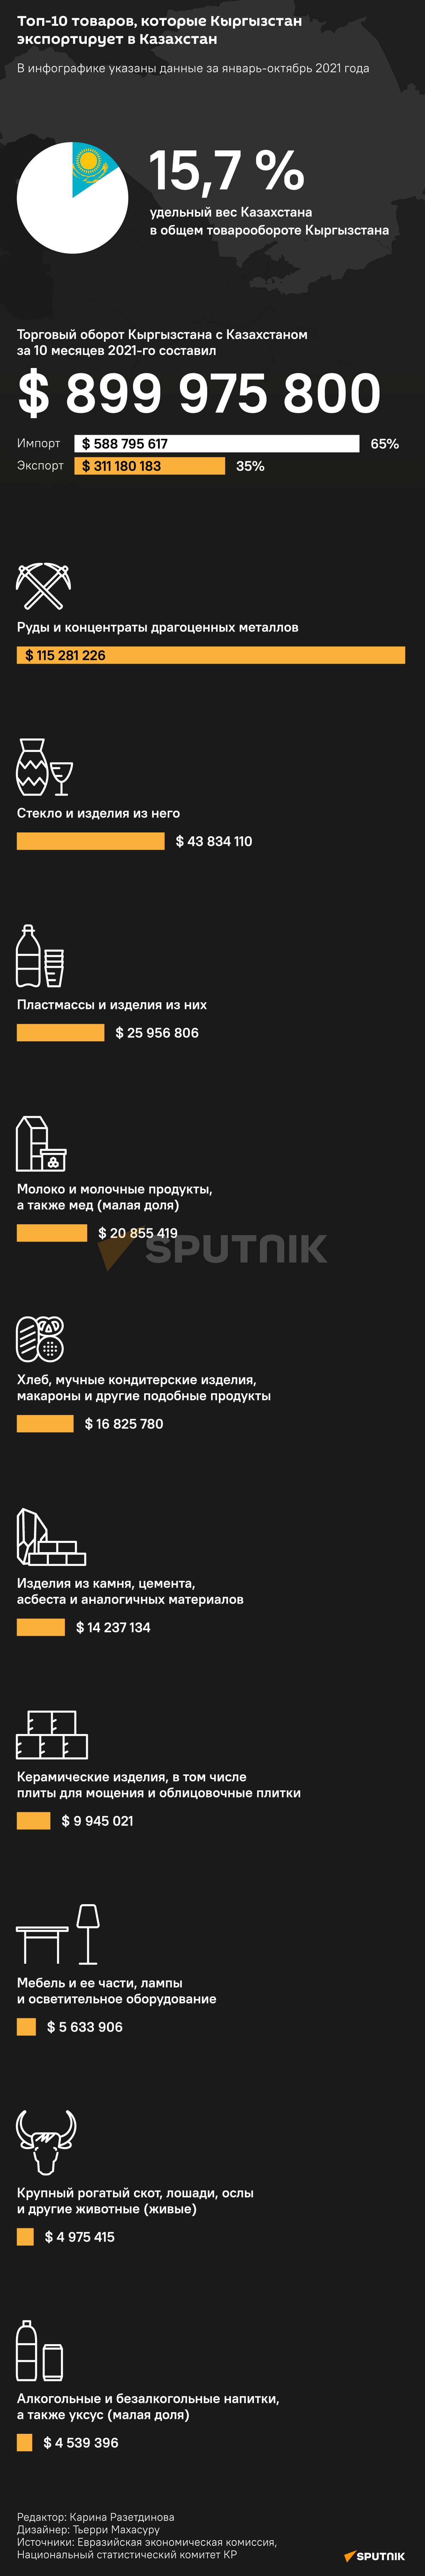 Топ-10 товаров, которые Кыргызстан экспортирует в Казахстан - Sputnik Кыргызстан